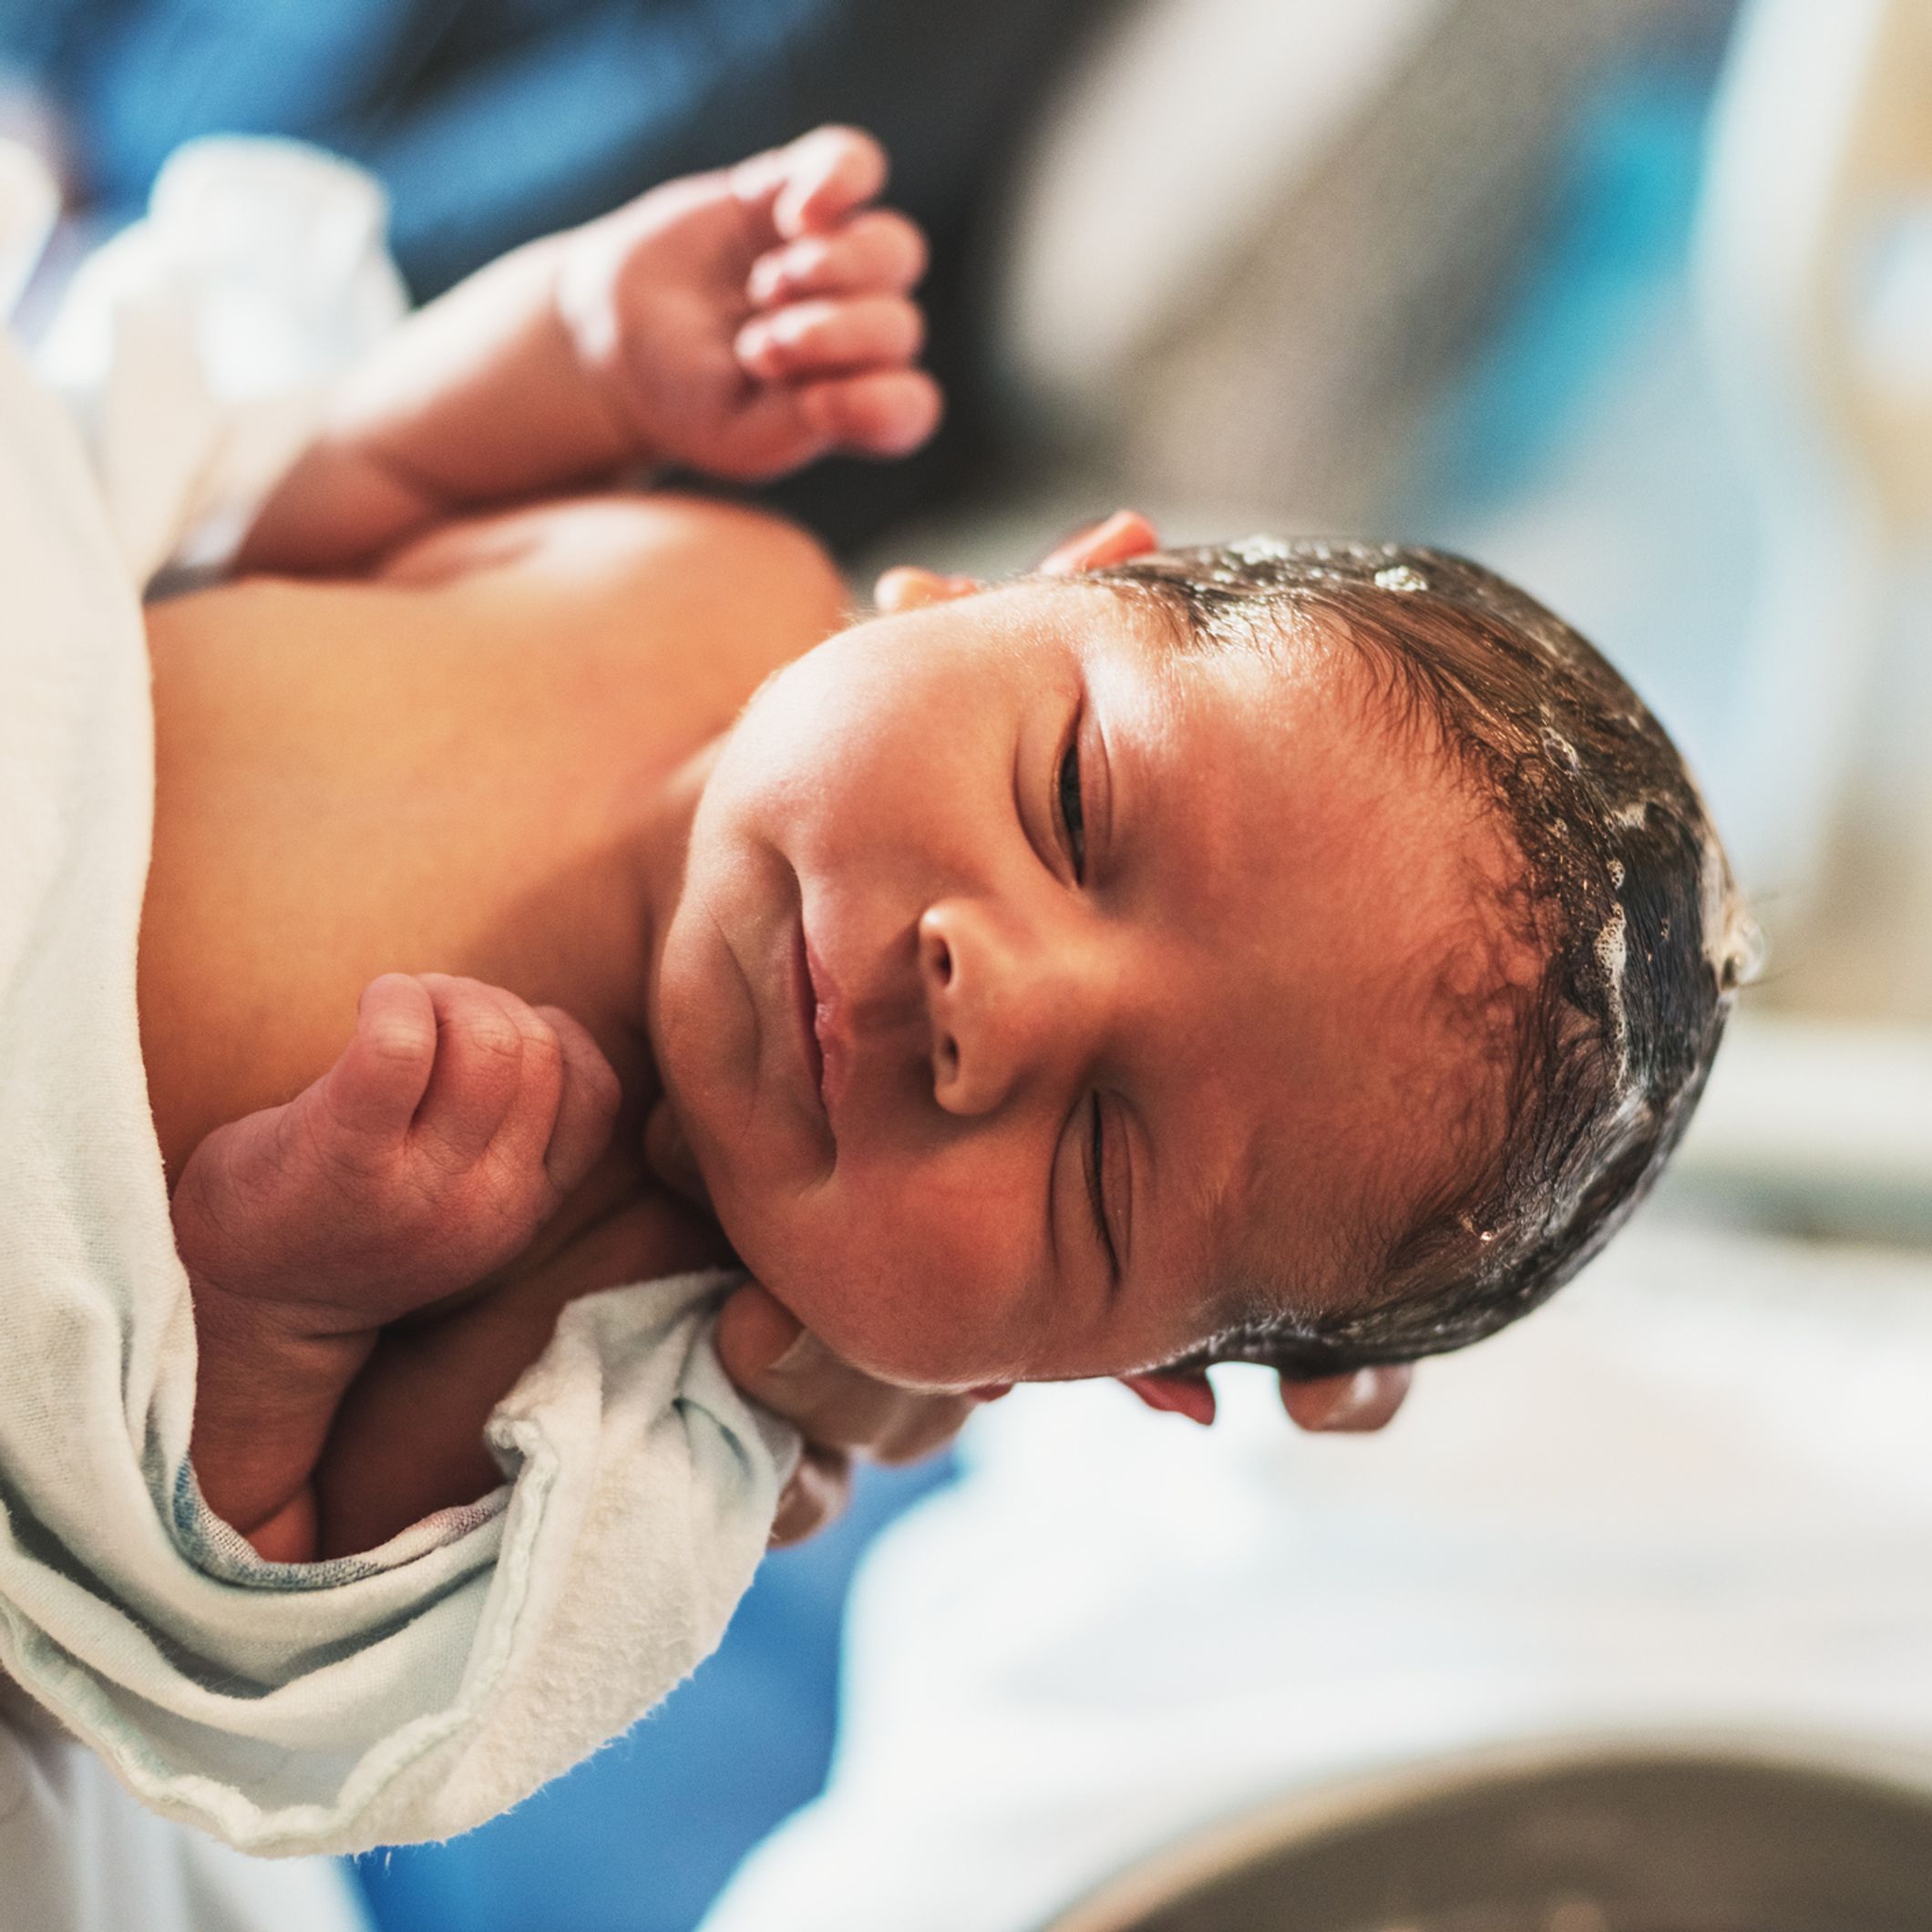 Bébé a 1 mois : son développement et ce qui change